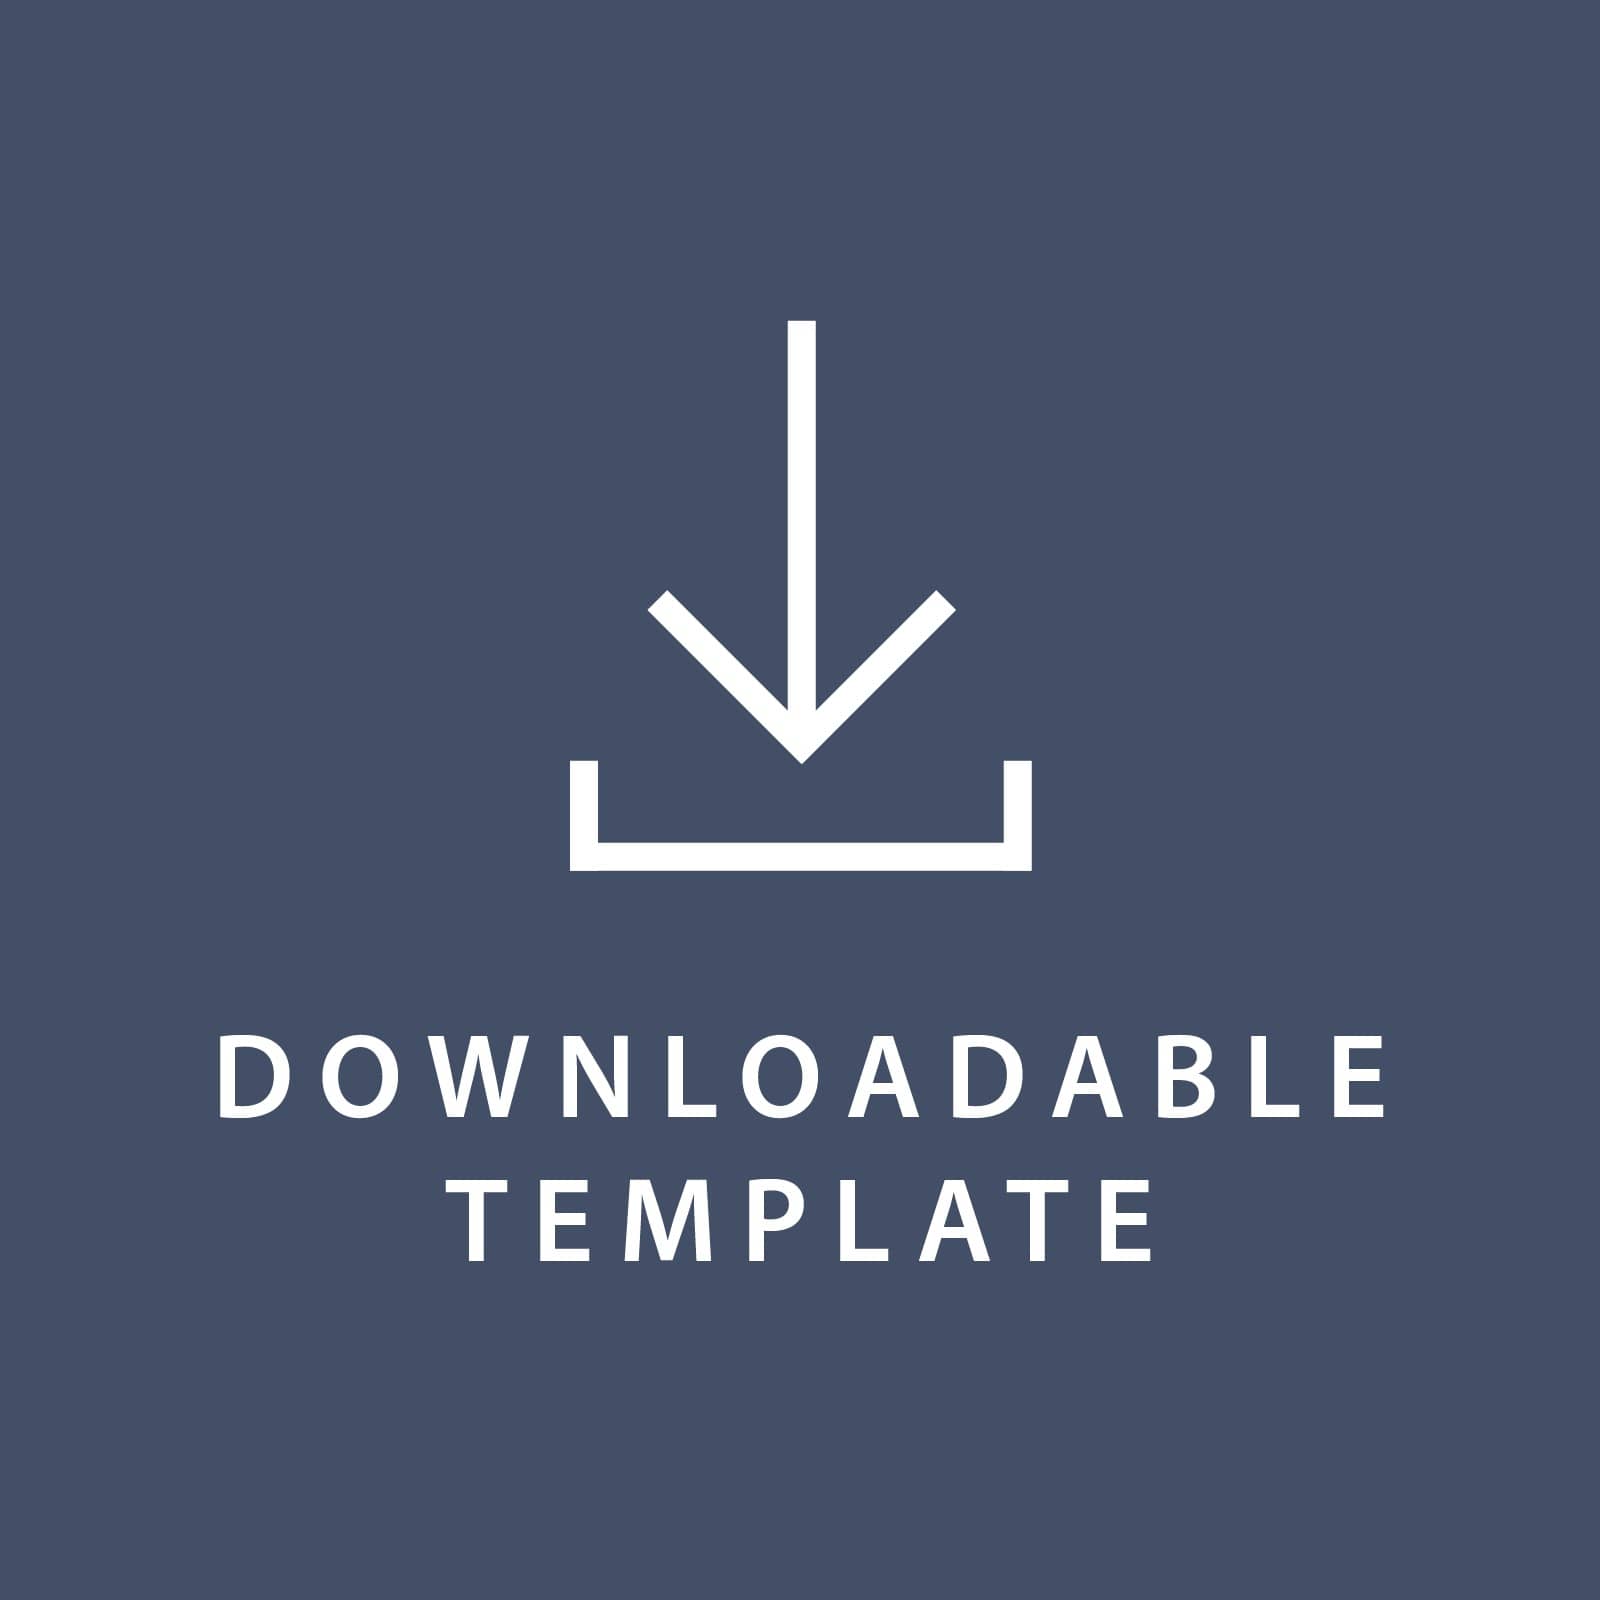 Template for 4.75 x 6.75 Invitations Gartner Studios Template tmplt0885